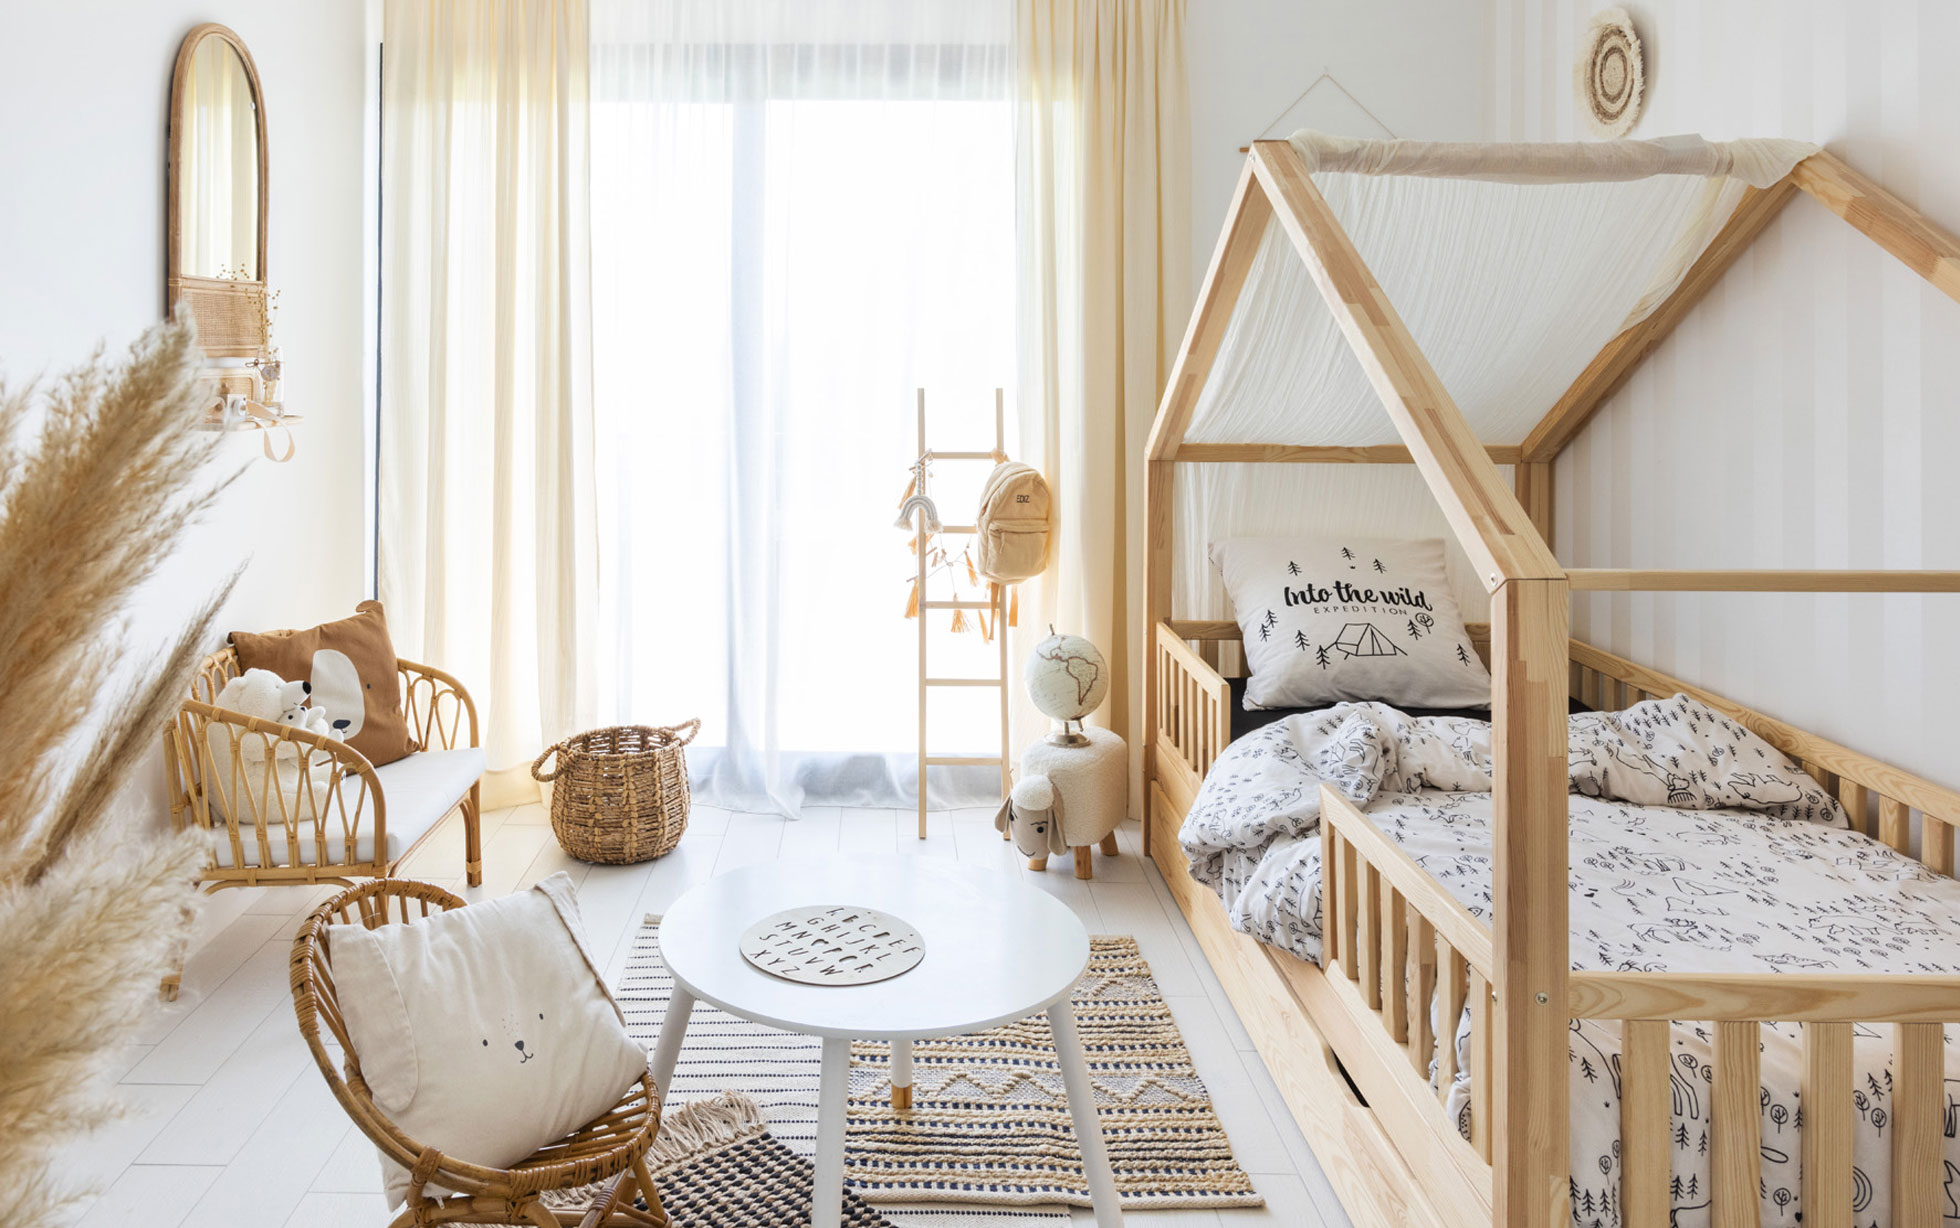 Habitación para bebé de estilo nórdico y rústico 